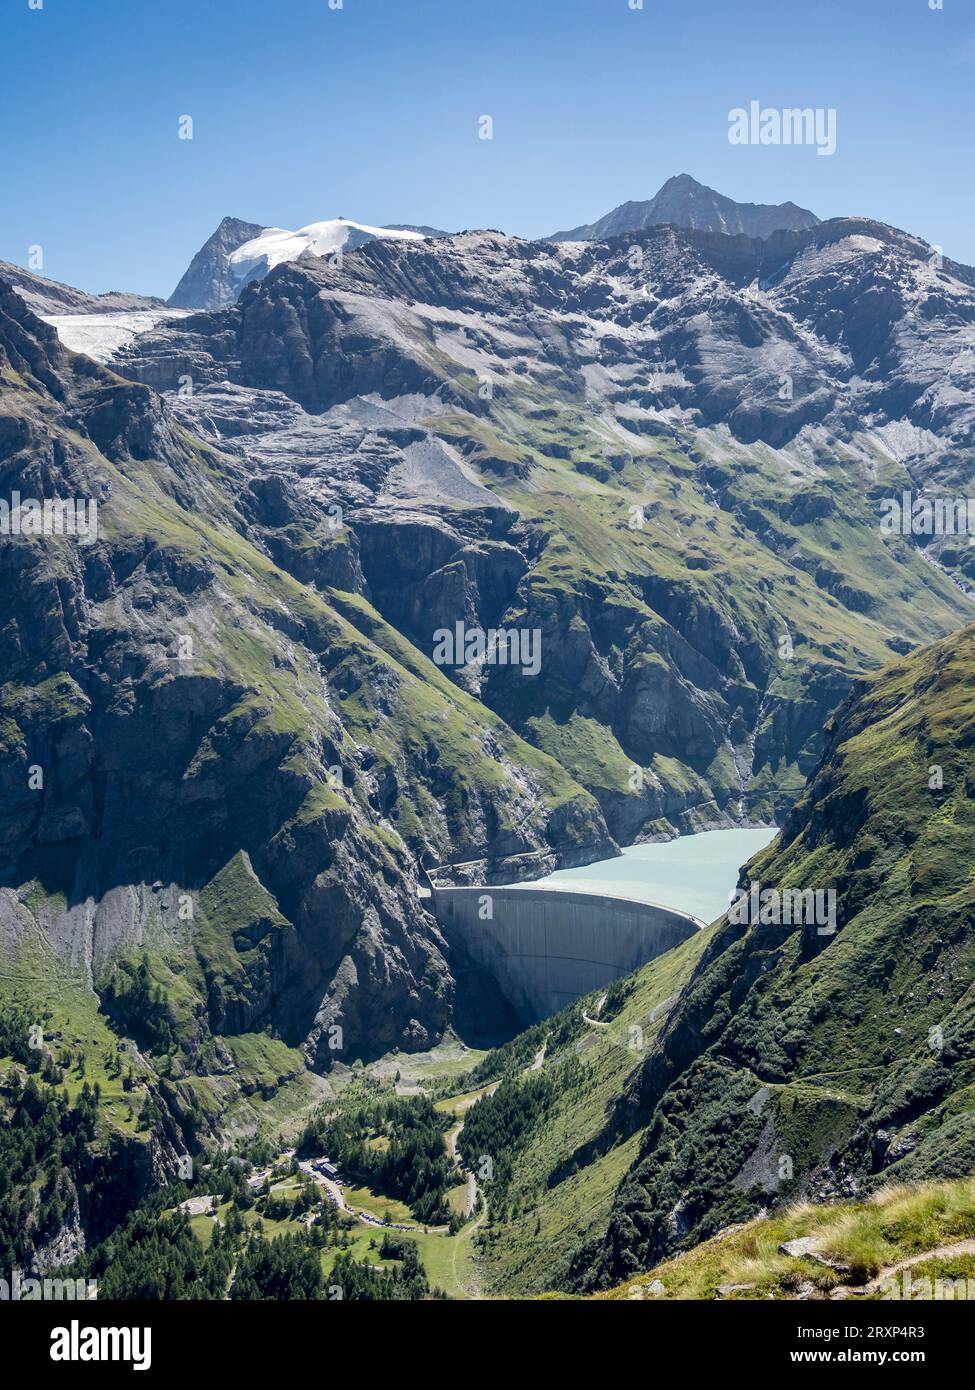 Barrage du lac Mauvoisin, parking pour randonneurs, Val de Bagnes, Valais, Suisse Banque D'Images